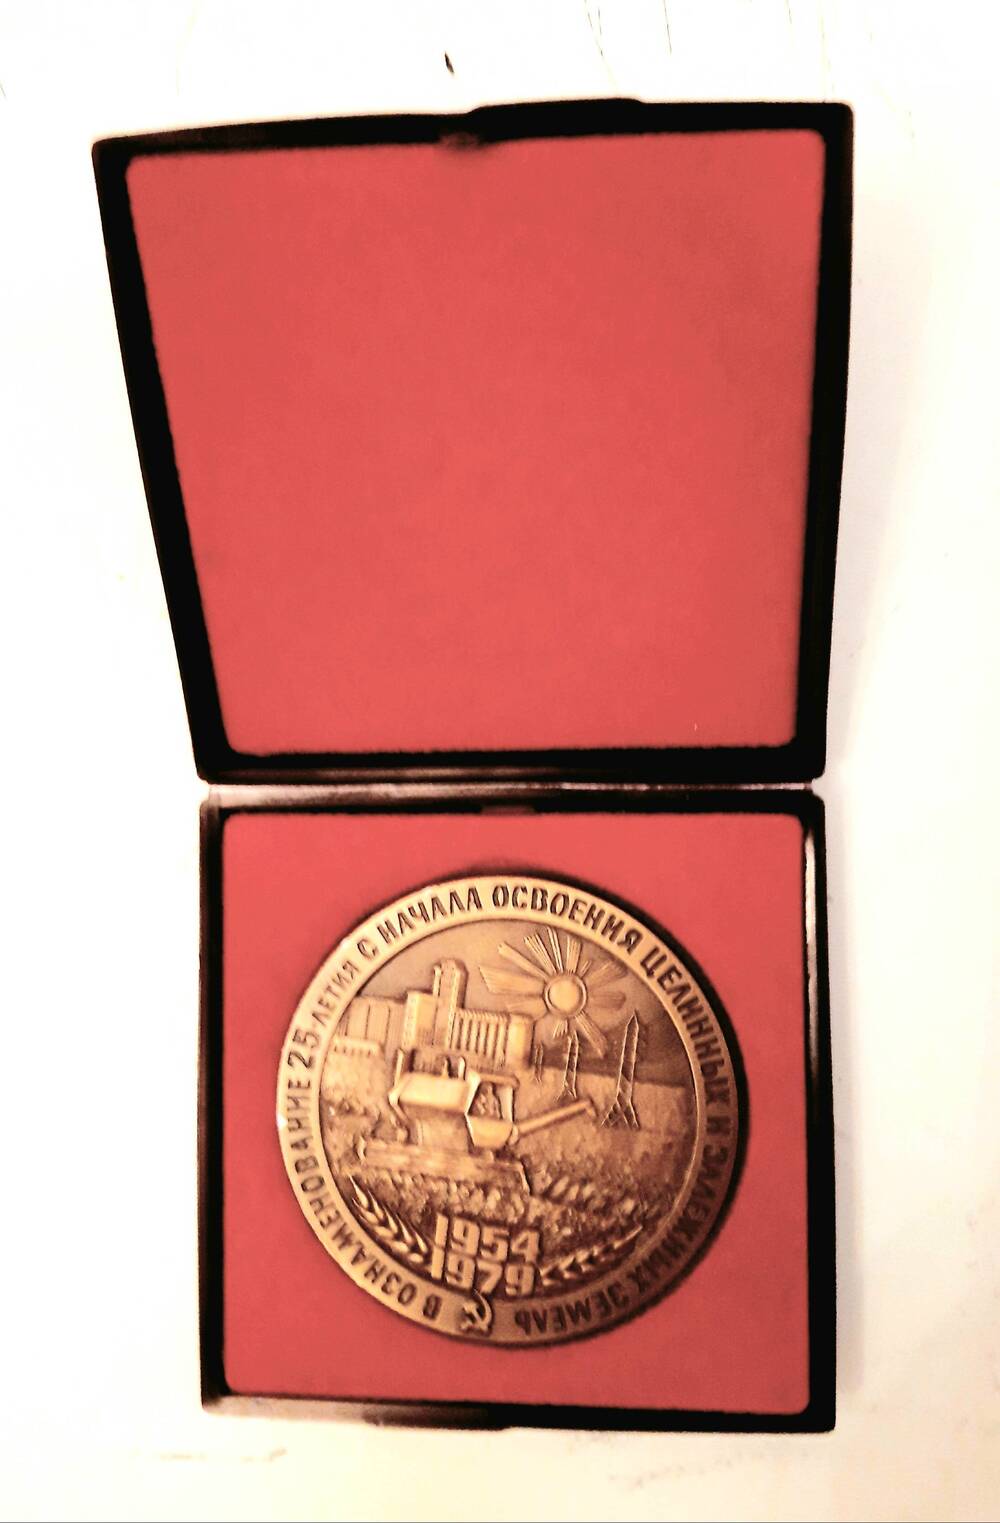 Медаль в ознаменование 25-летия с начала освоения целинных и залежных земель. Награжден Калачевский район в 1979 году. Г. Москва, 1979